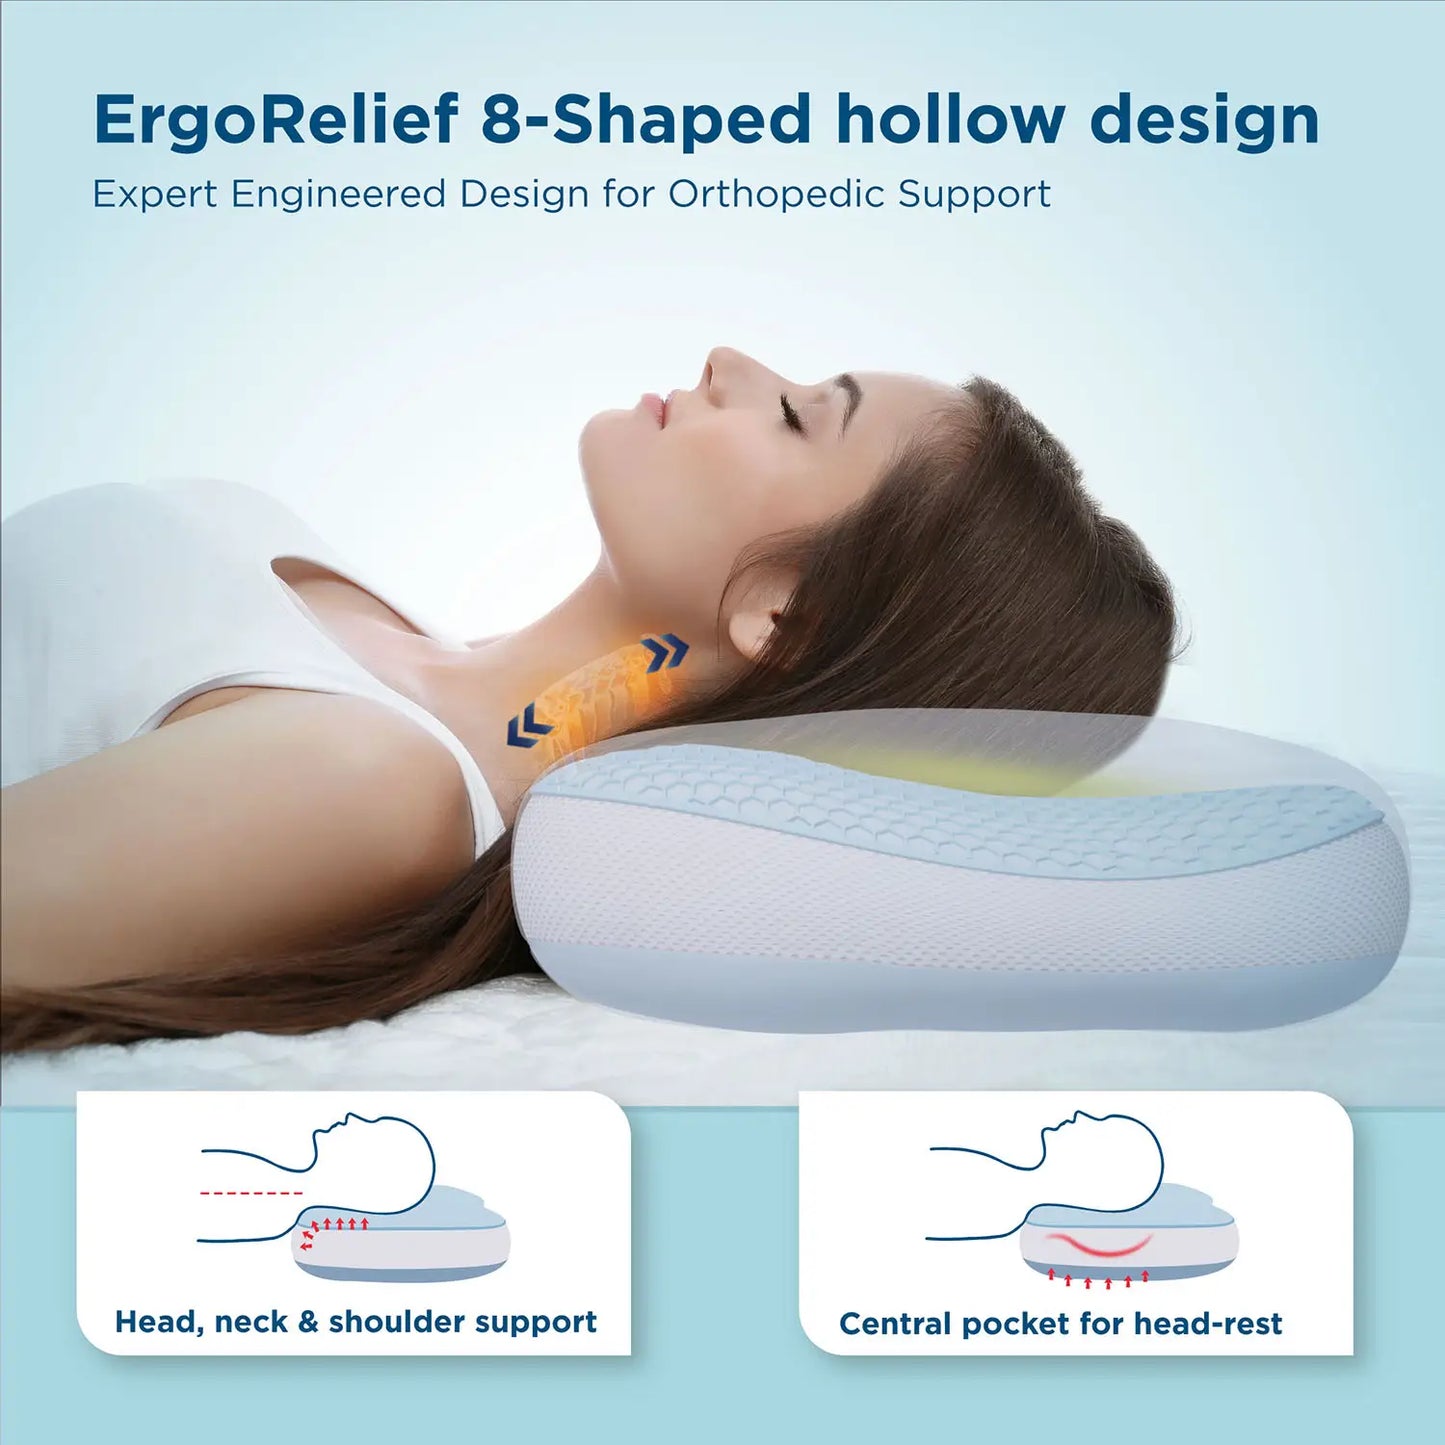 Ergo Relief 8-Shaped hollow design 